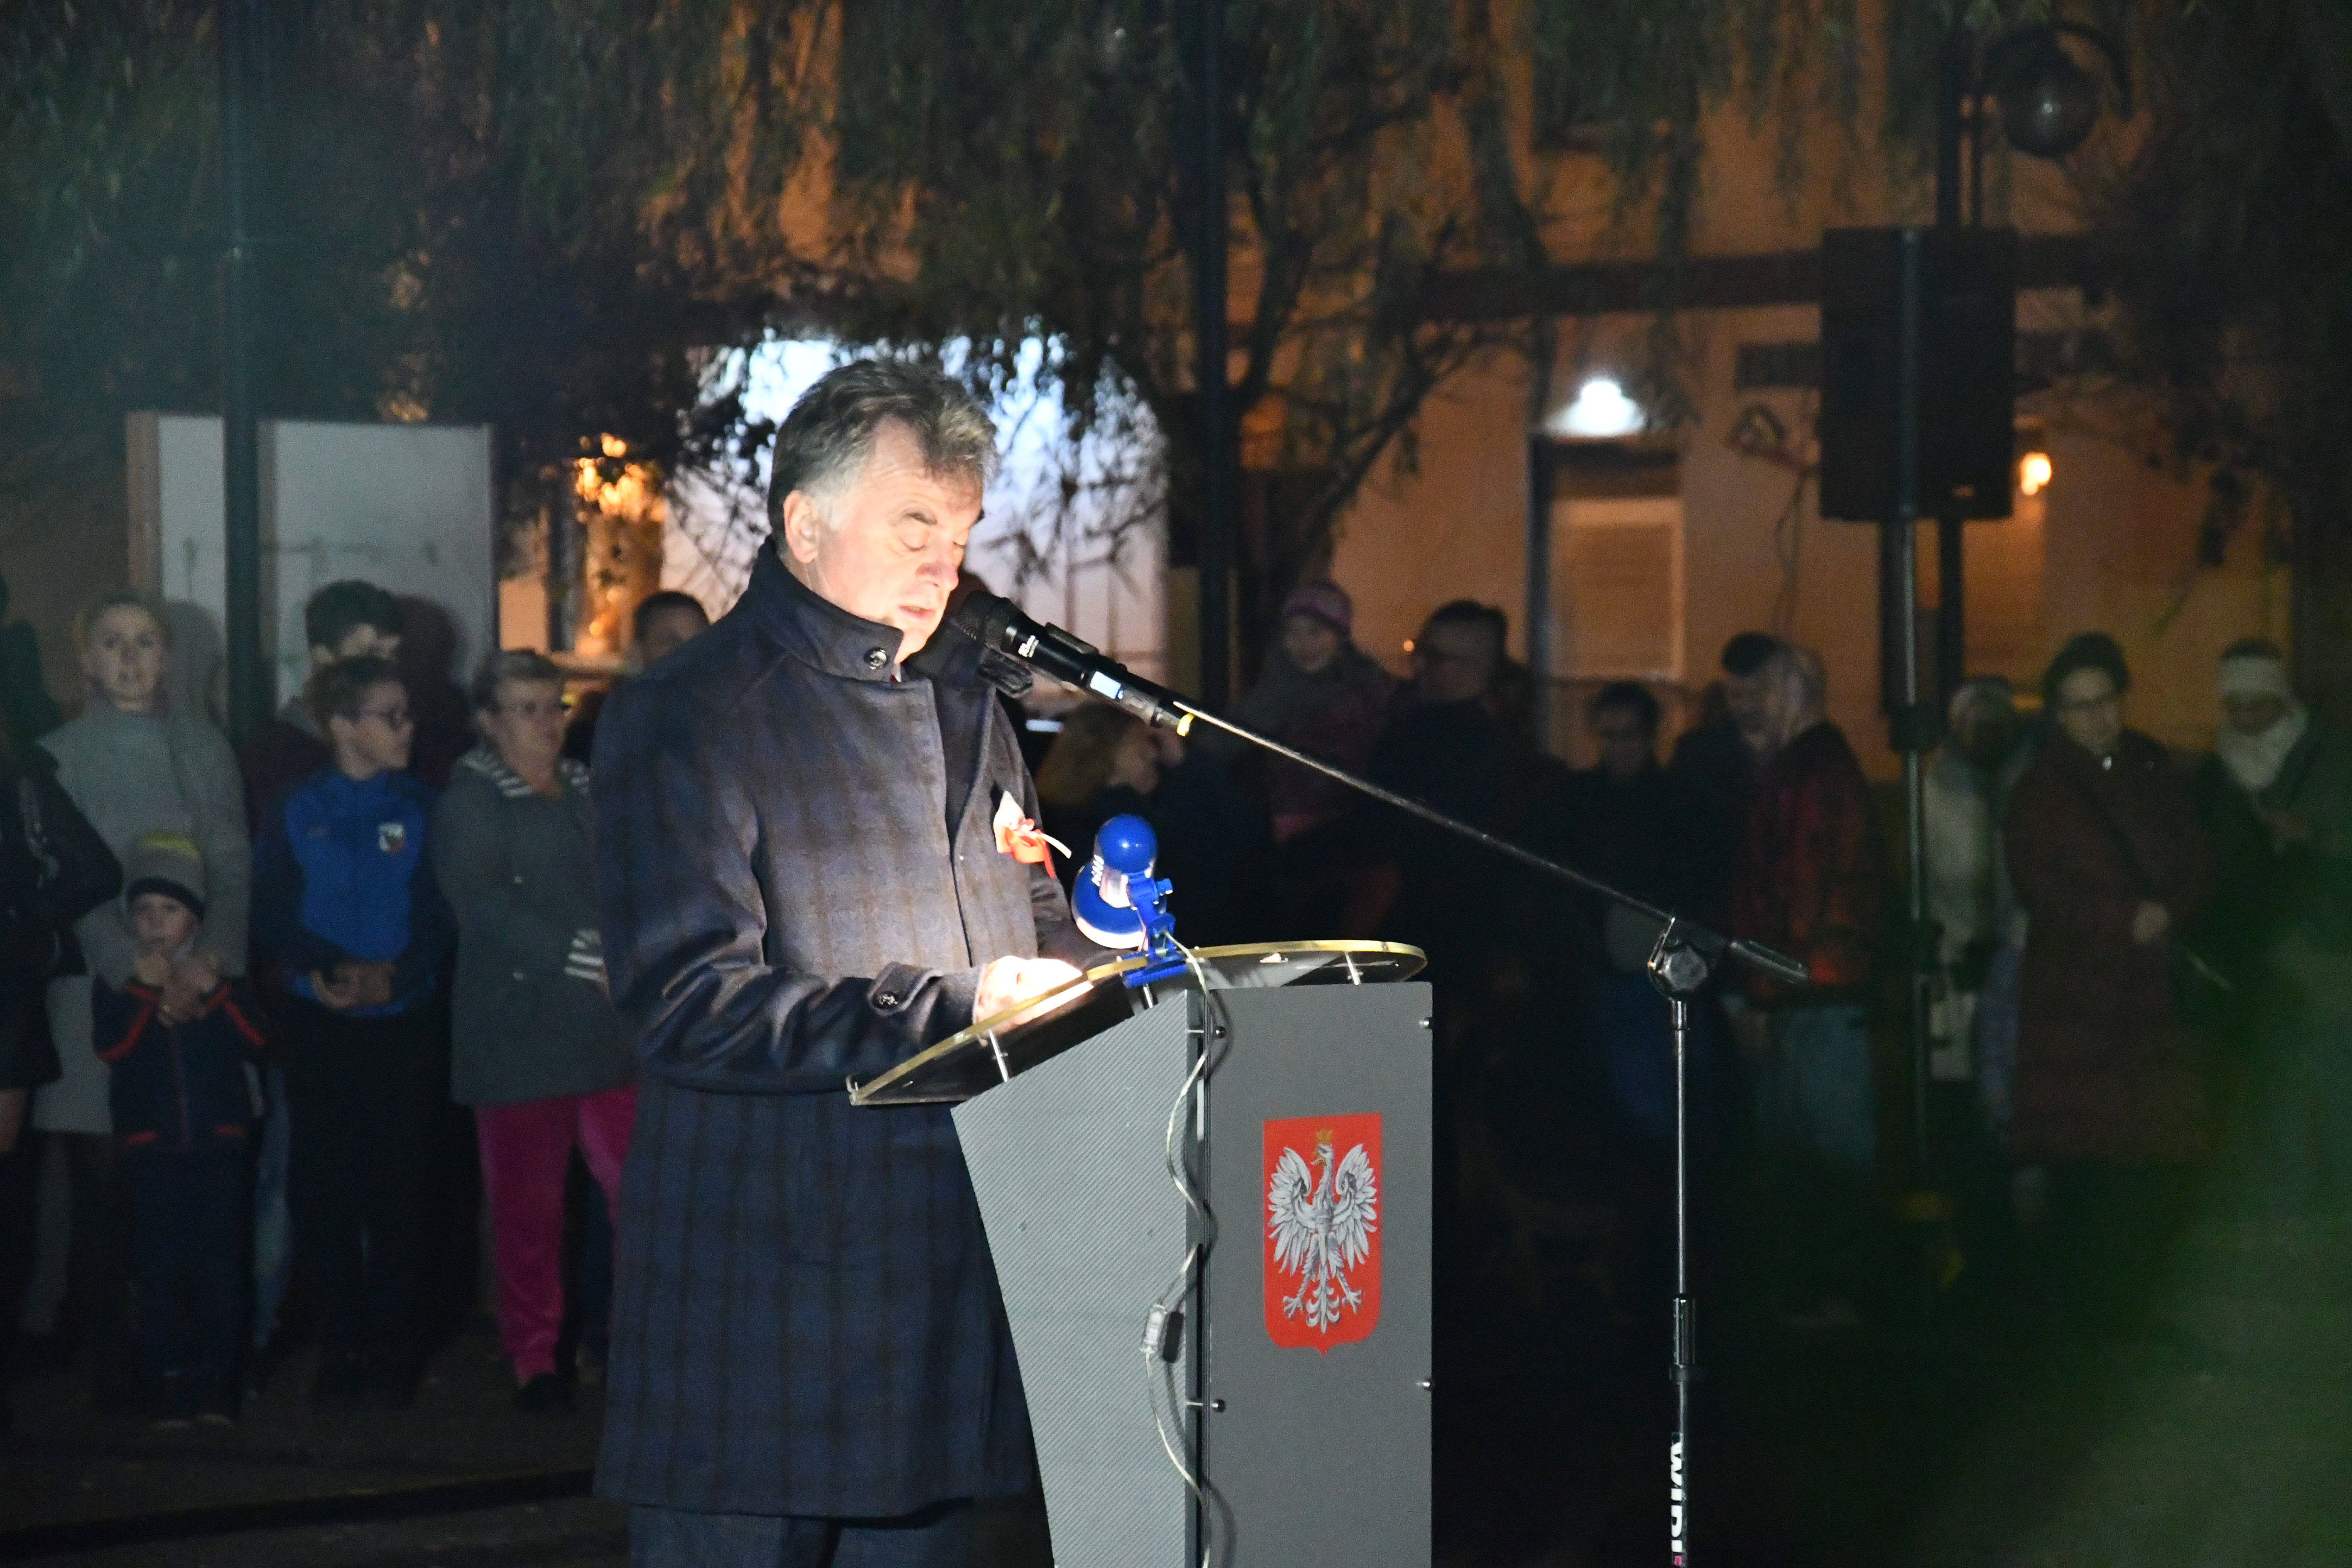 Burmistrz Janusz Piechocki podczas przemówienia, stoi przy mównicy, za nim zebrał się tłum słuchaczy i uczestników wydarzenia.